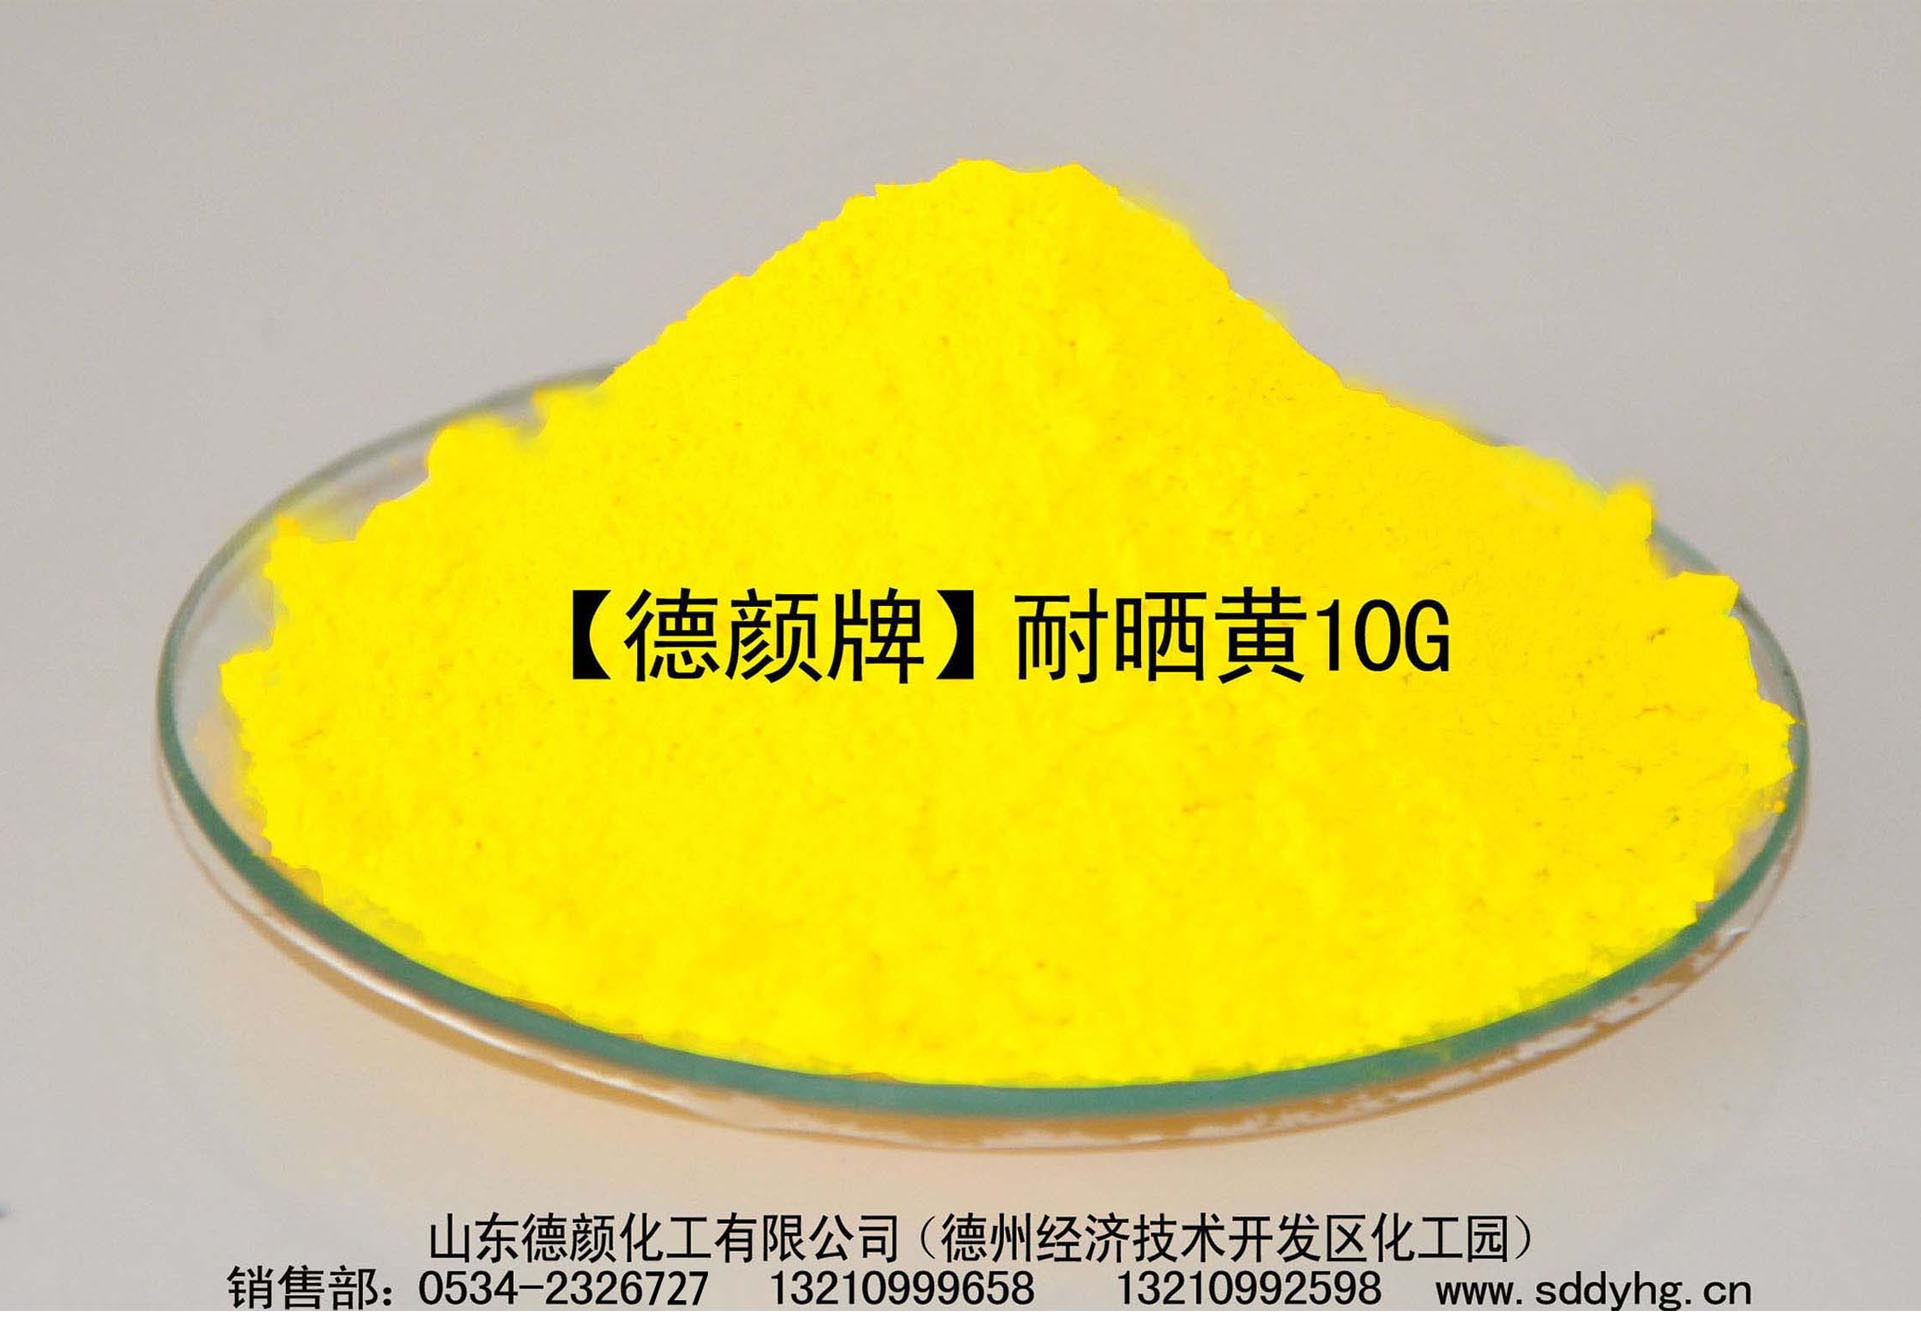 山东德颜化工专业生产颜料P.Y.3耐晒黄10G